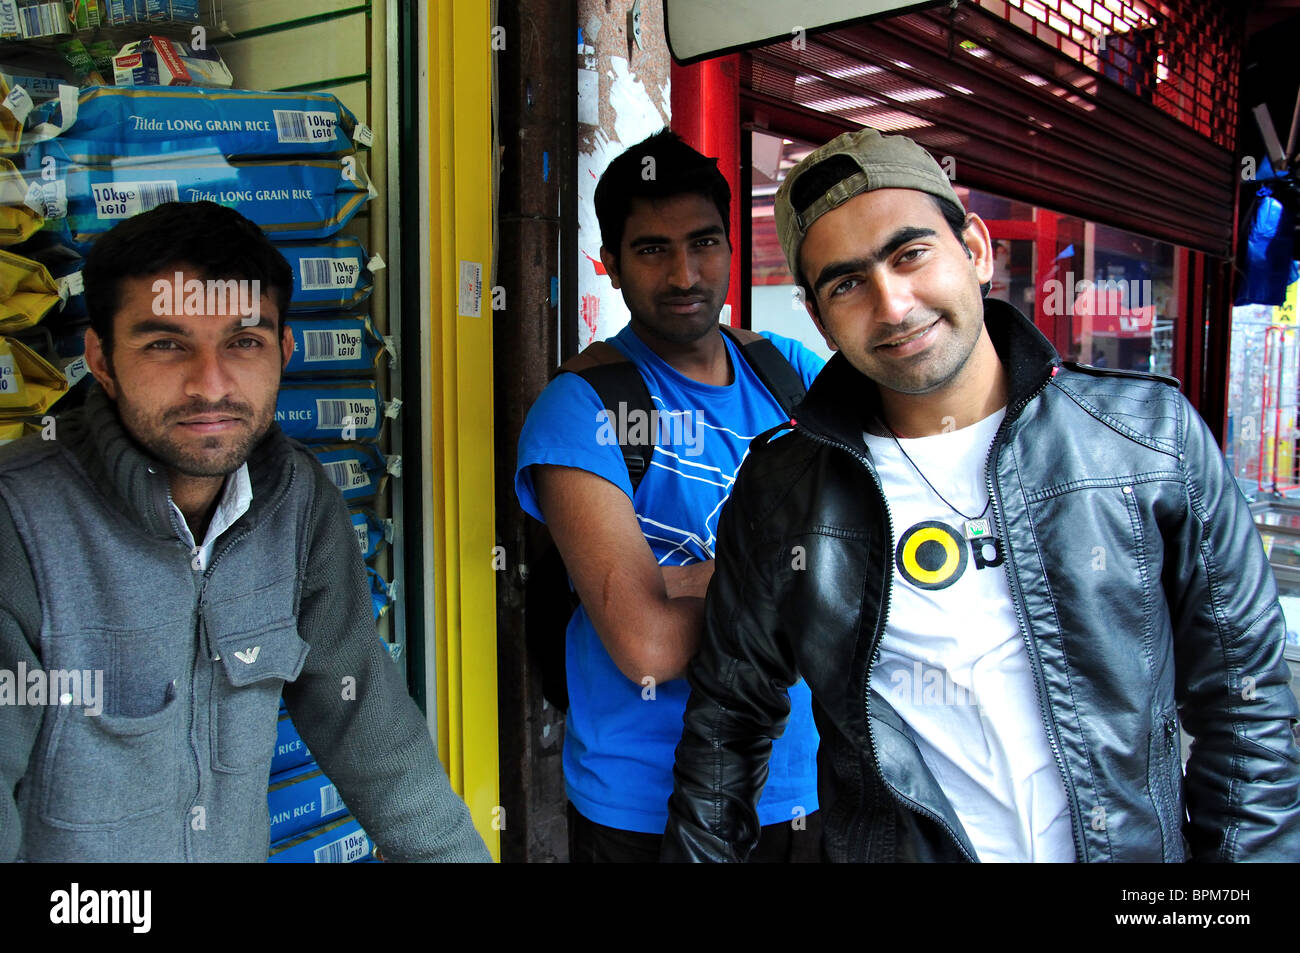 Les jeunes hommes par stall, marché de Brixton, Electric Avenue, Brixton, London Borough of Lambeth, Greater London, Angleterre, Royaume-Uni Banque D'Images